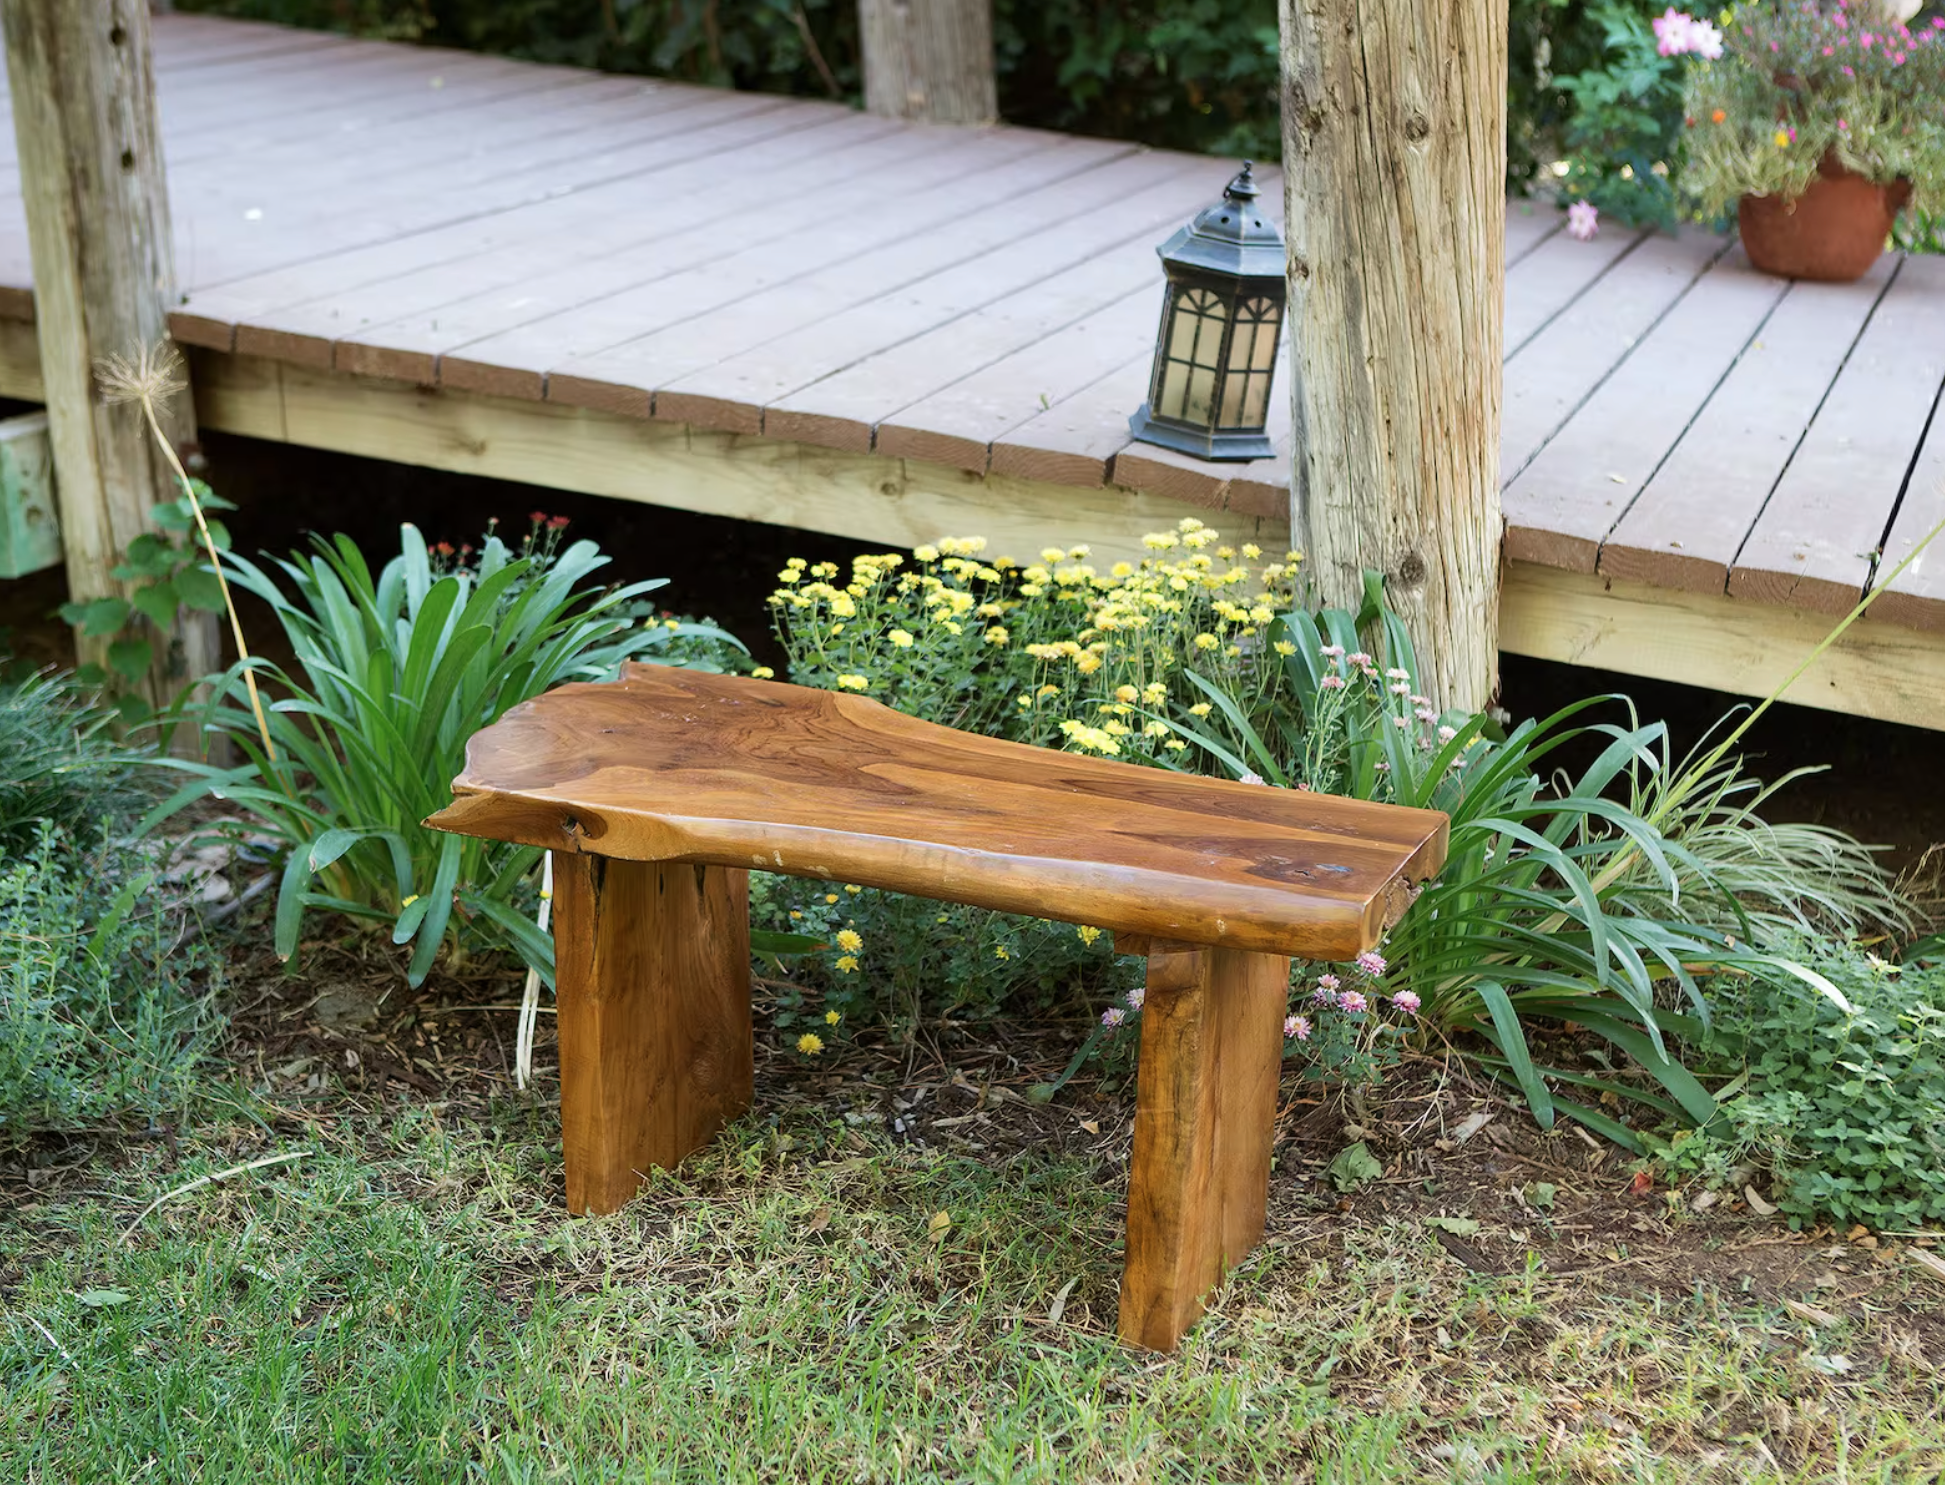 A teak outdoor bench